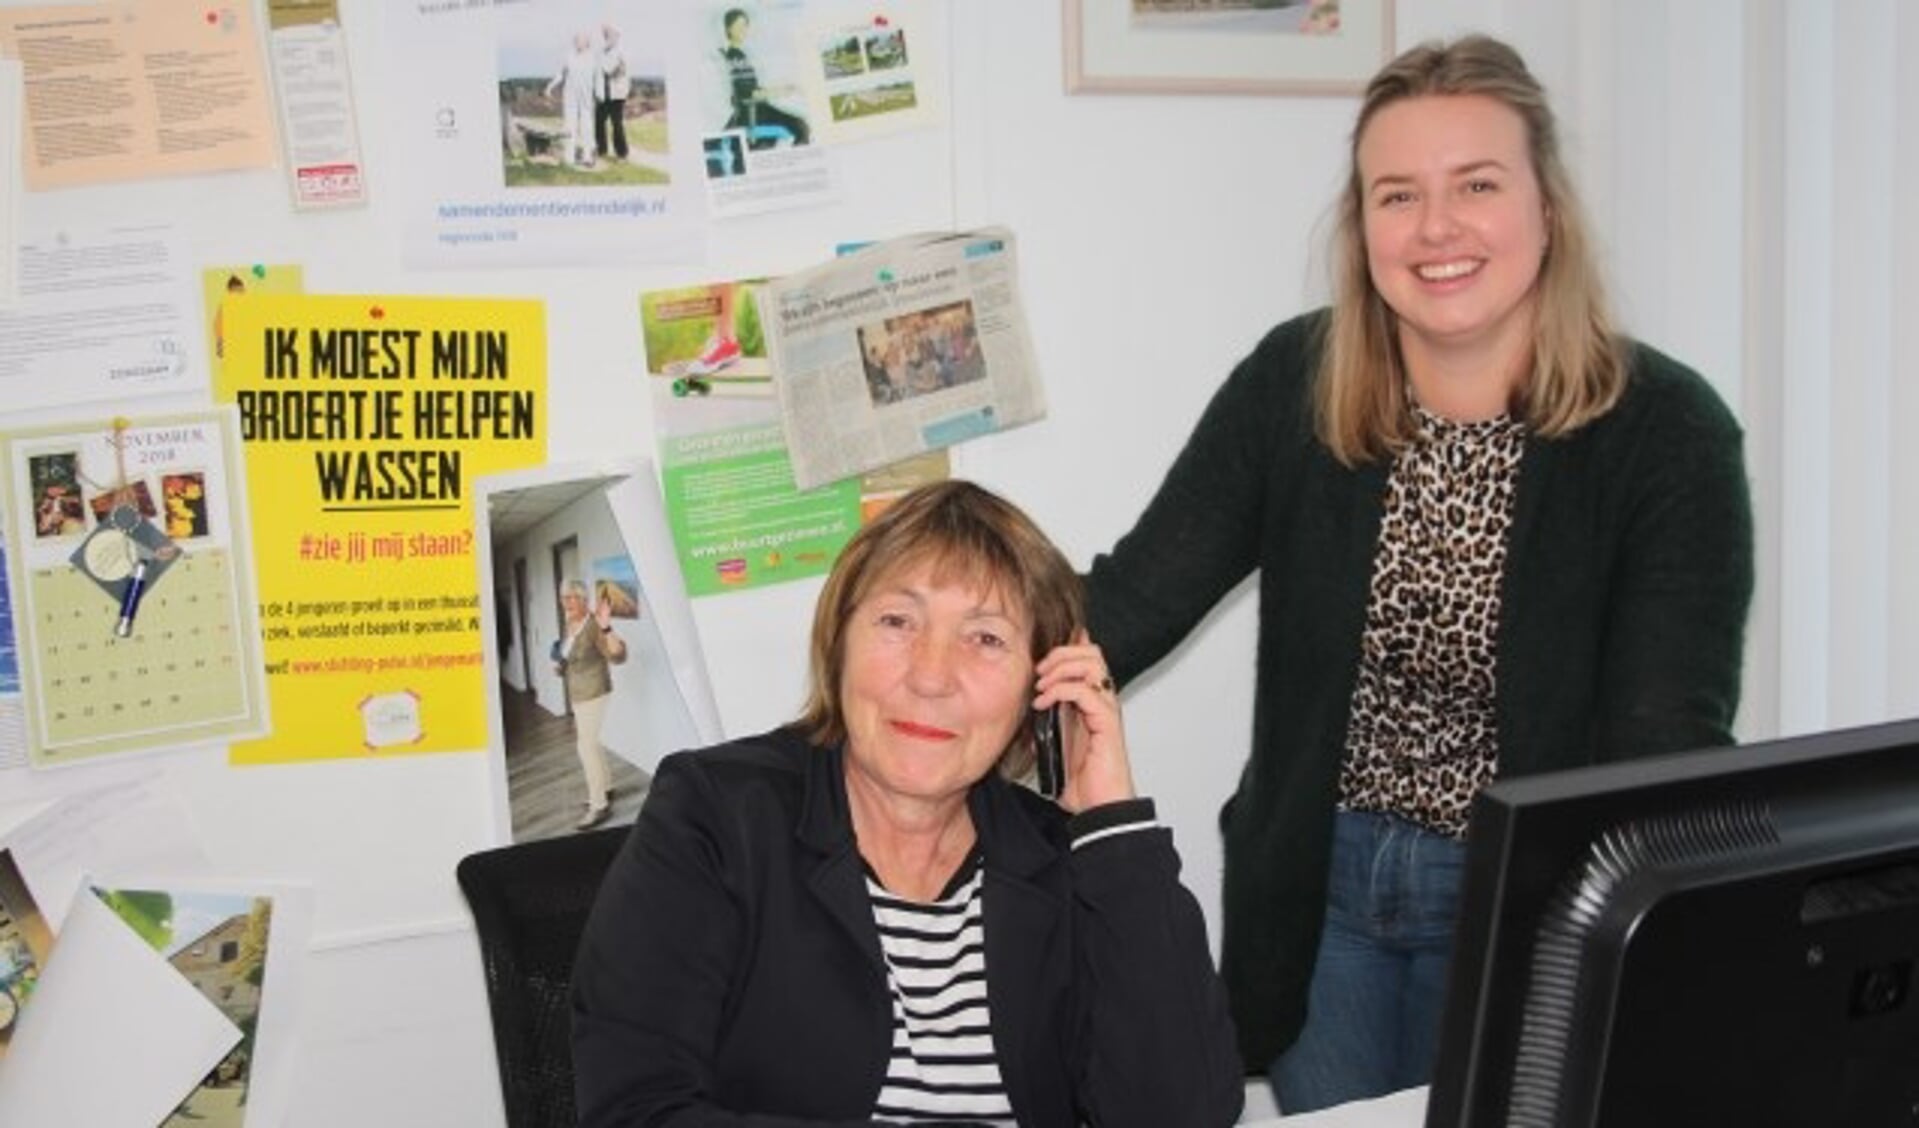 Wilma Kleijweg, geflankeerd door collega Ody van ’t Veer, zit nog één keer in haar vertrouwde kantoor in De Oase. (Foto: Lysette Verwegen)